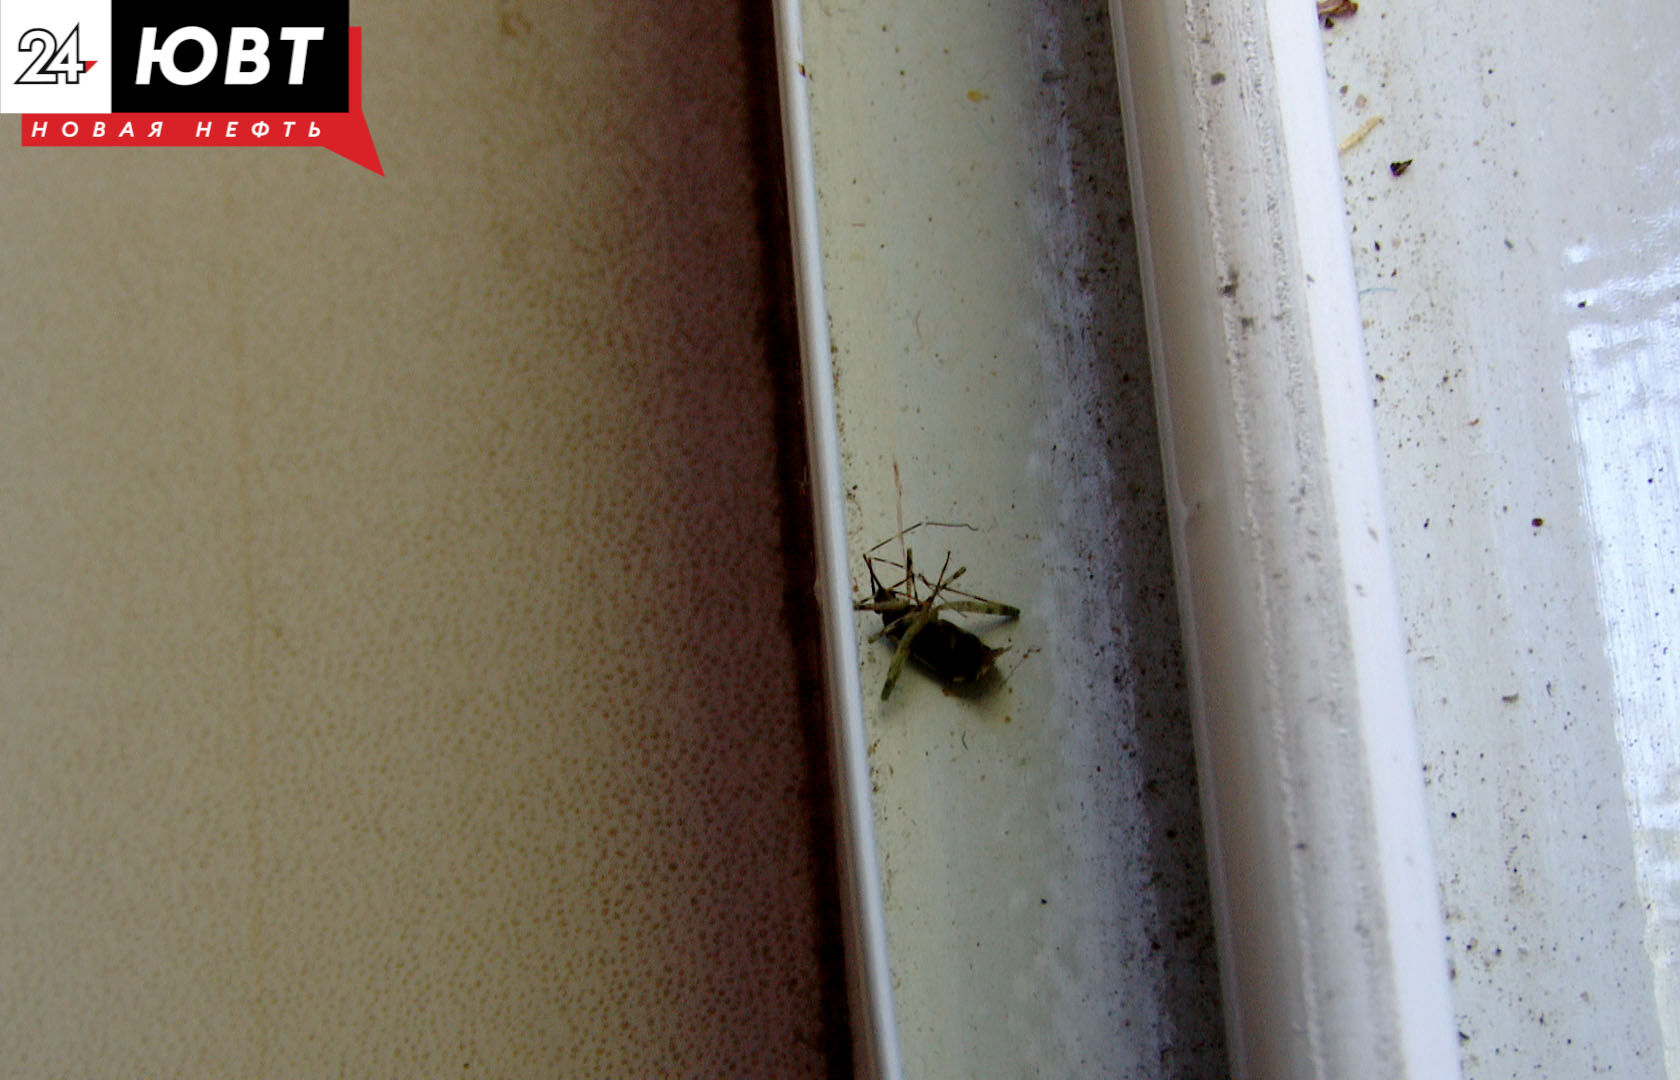 Ветерану из Альметьевска обработают квартиру от насекомых и заменят москитную сетку